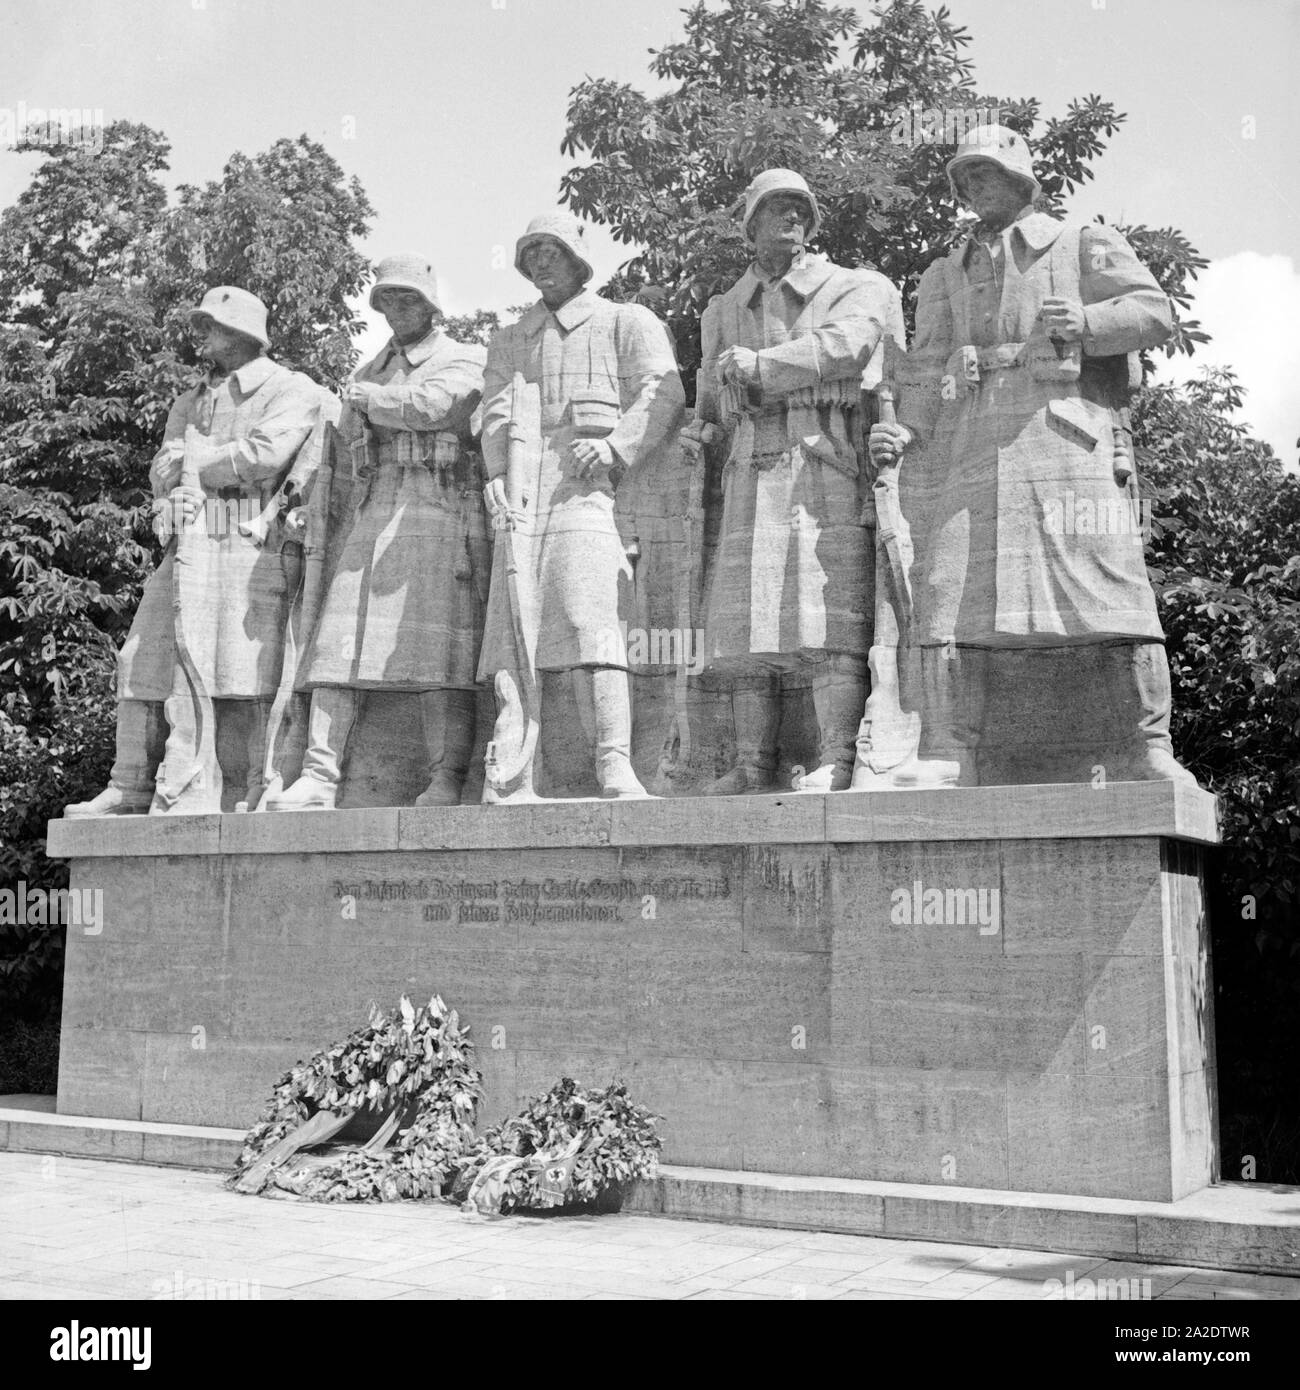 Denkmal für die Gefallenen des 1. Weltkrieges des Bildhauers Paul Birr in Worms, Deutschland 1930er Jahre. Denkmal für die Soldaten der WK1 von Bildhauer Paul Birr in Worms, Deutschland 1930. Stockfoto